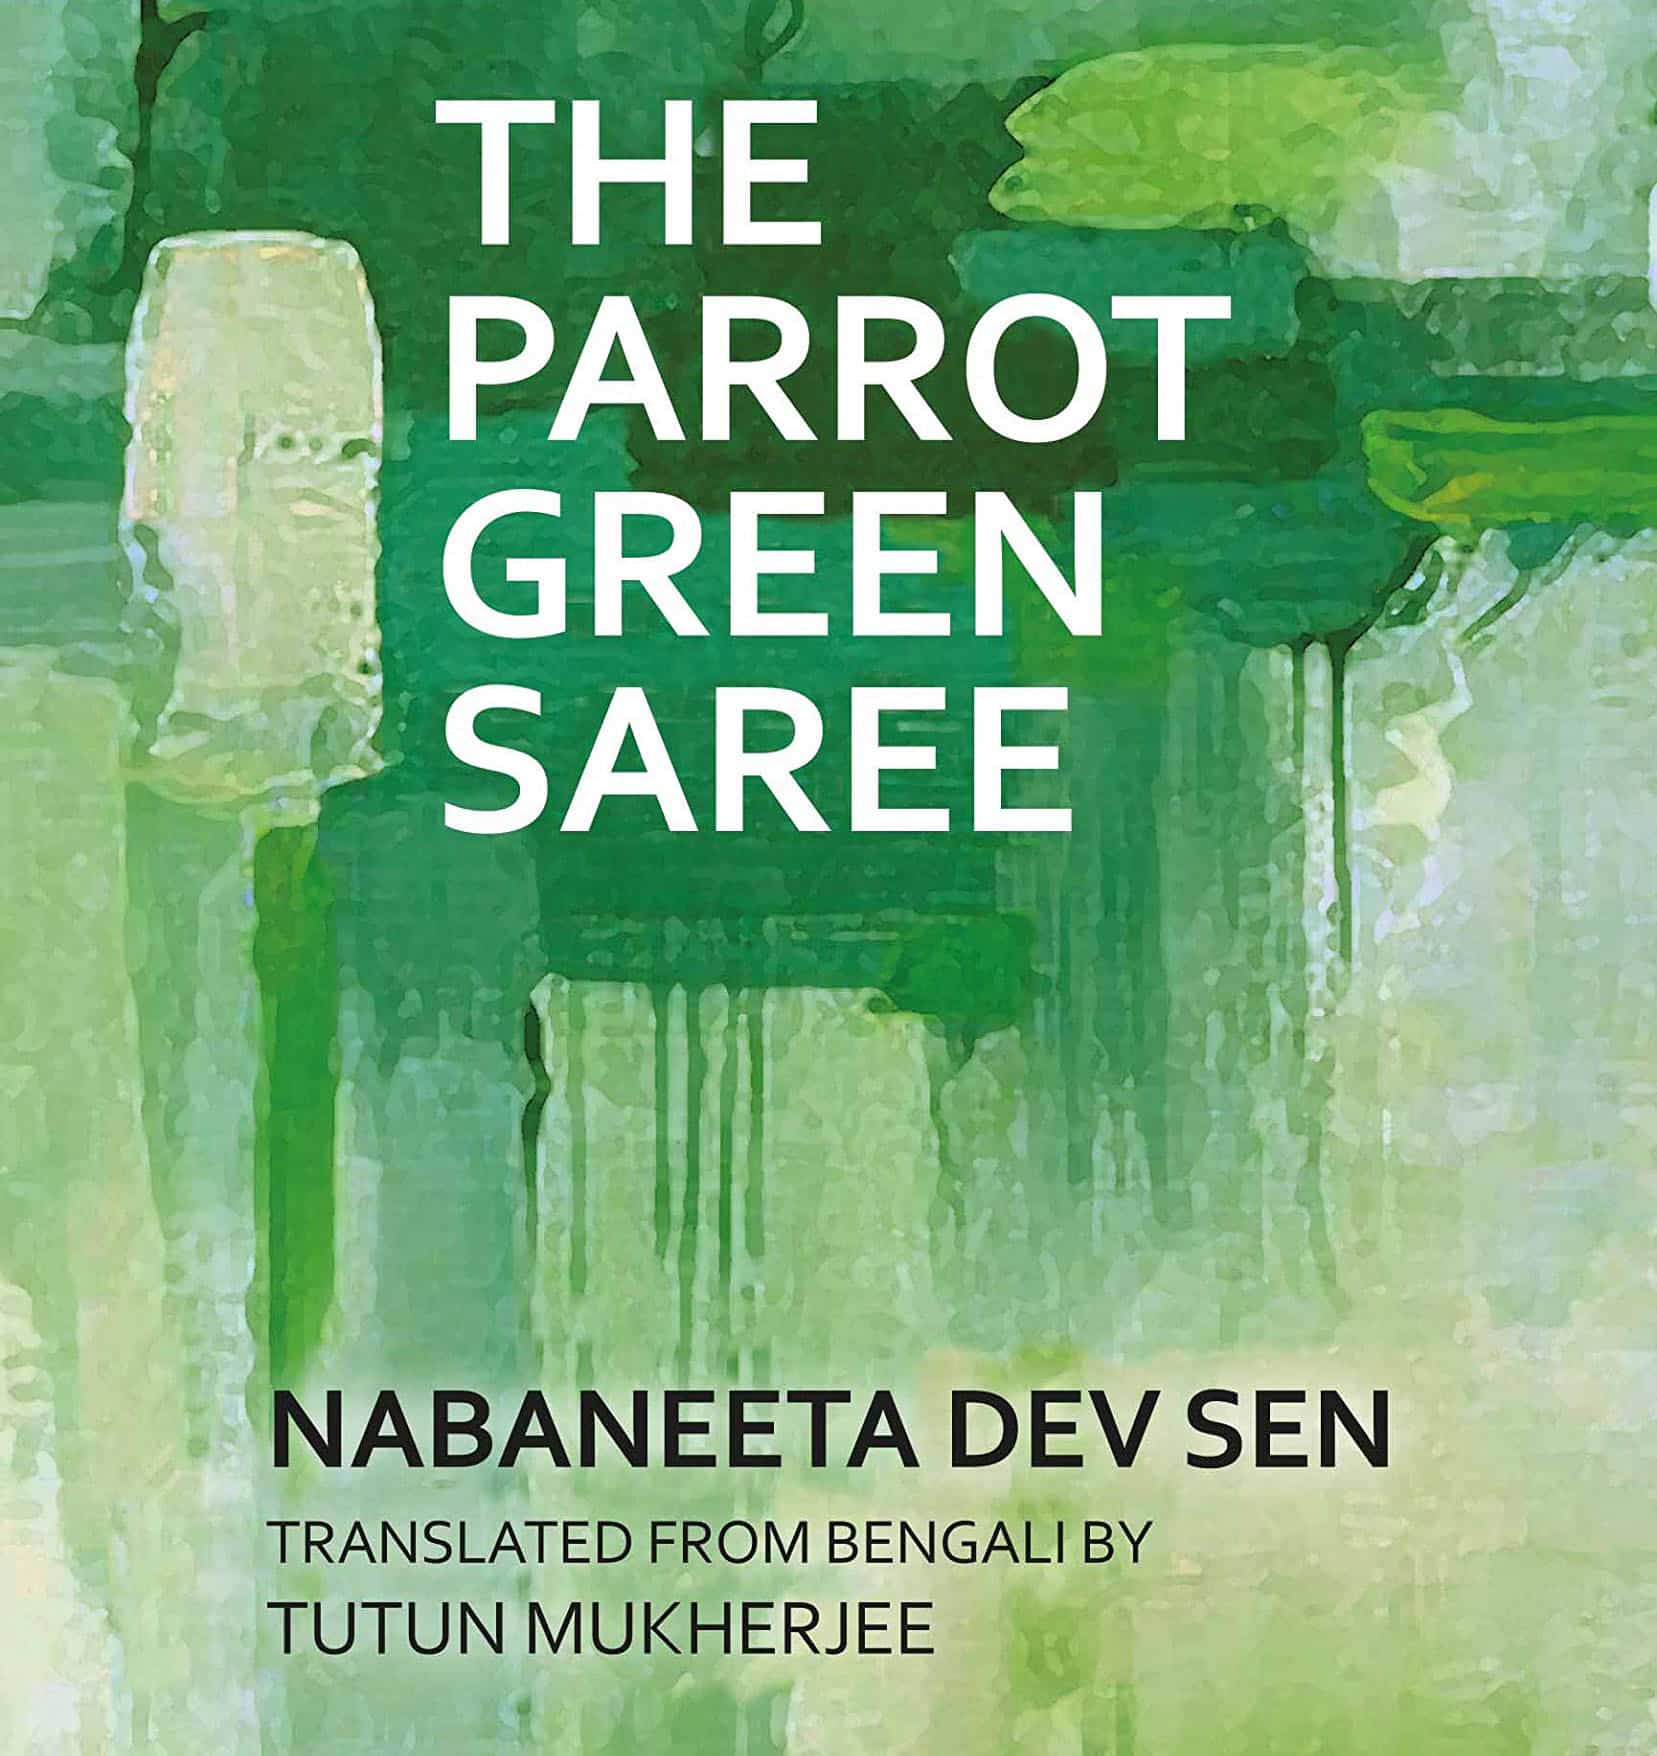 THE PARROT GREEN SAREE